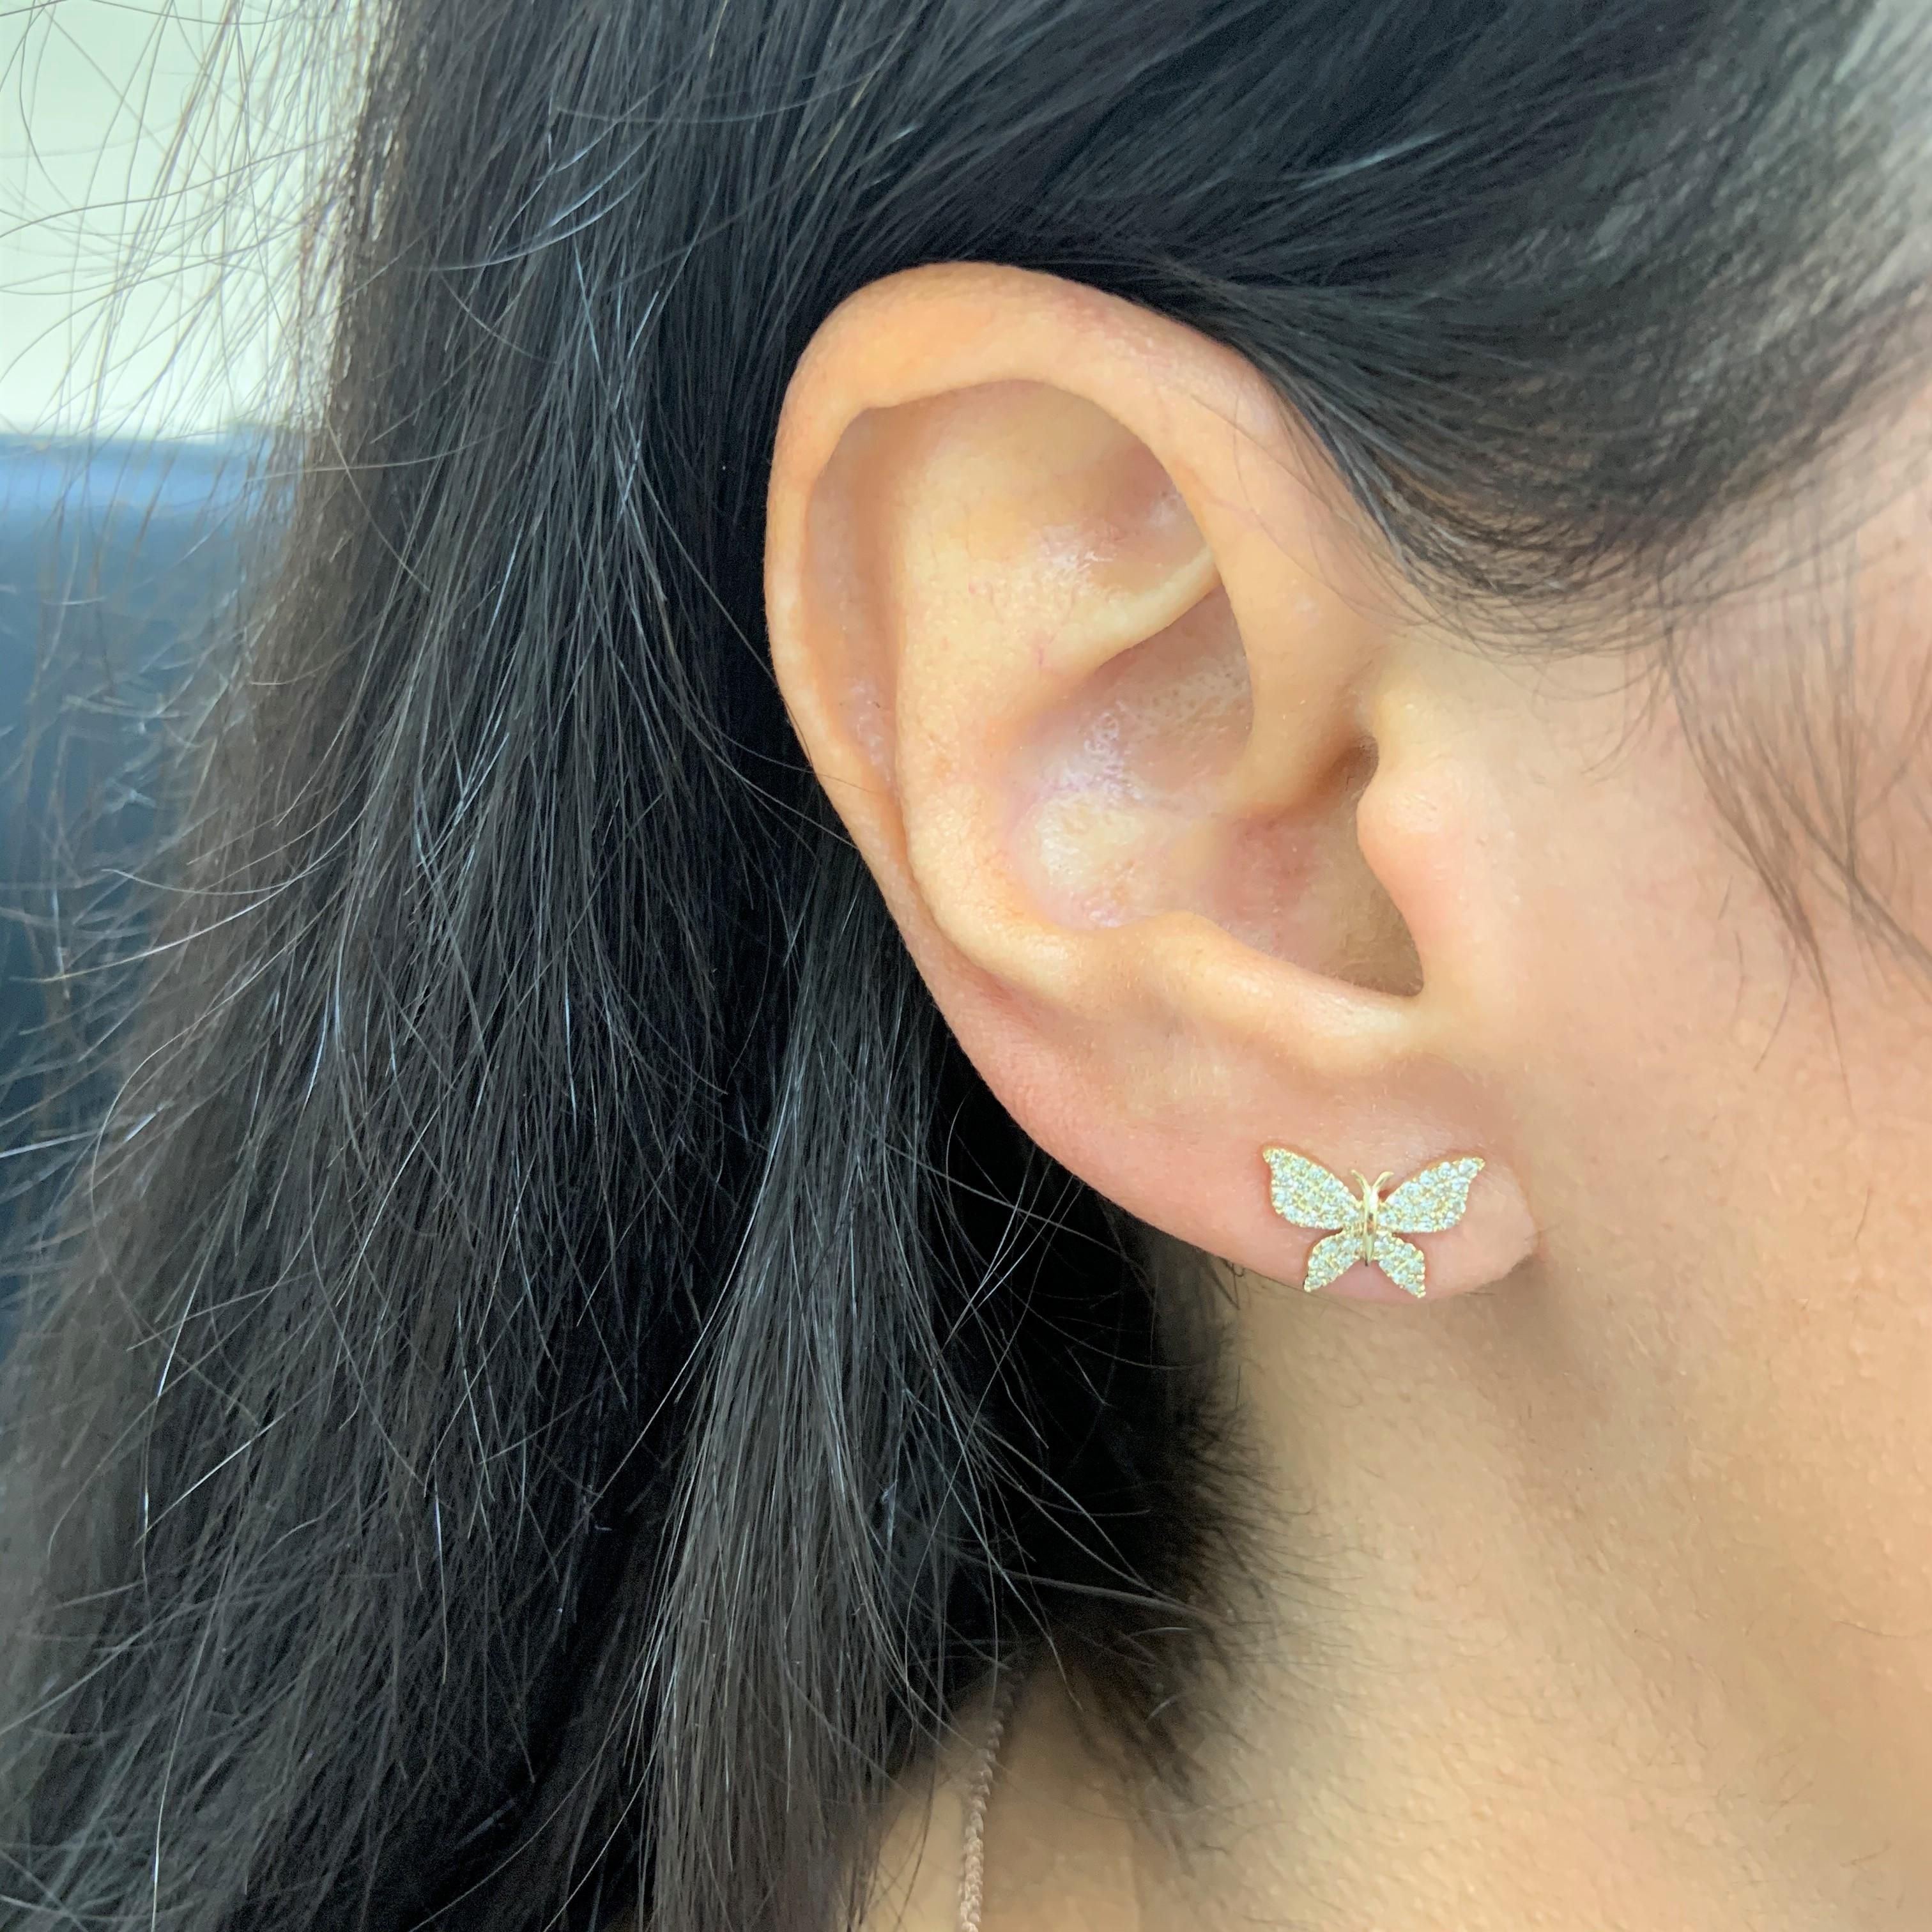 butterfly earrings for double piercing